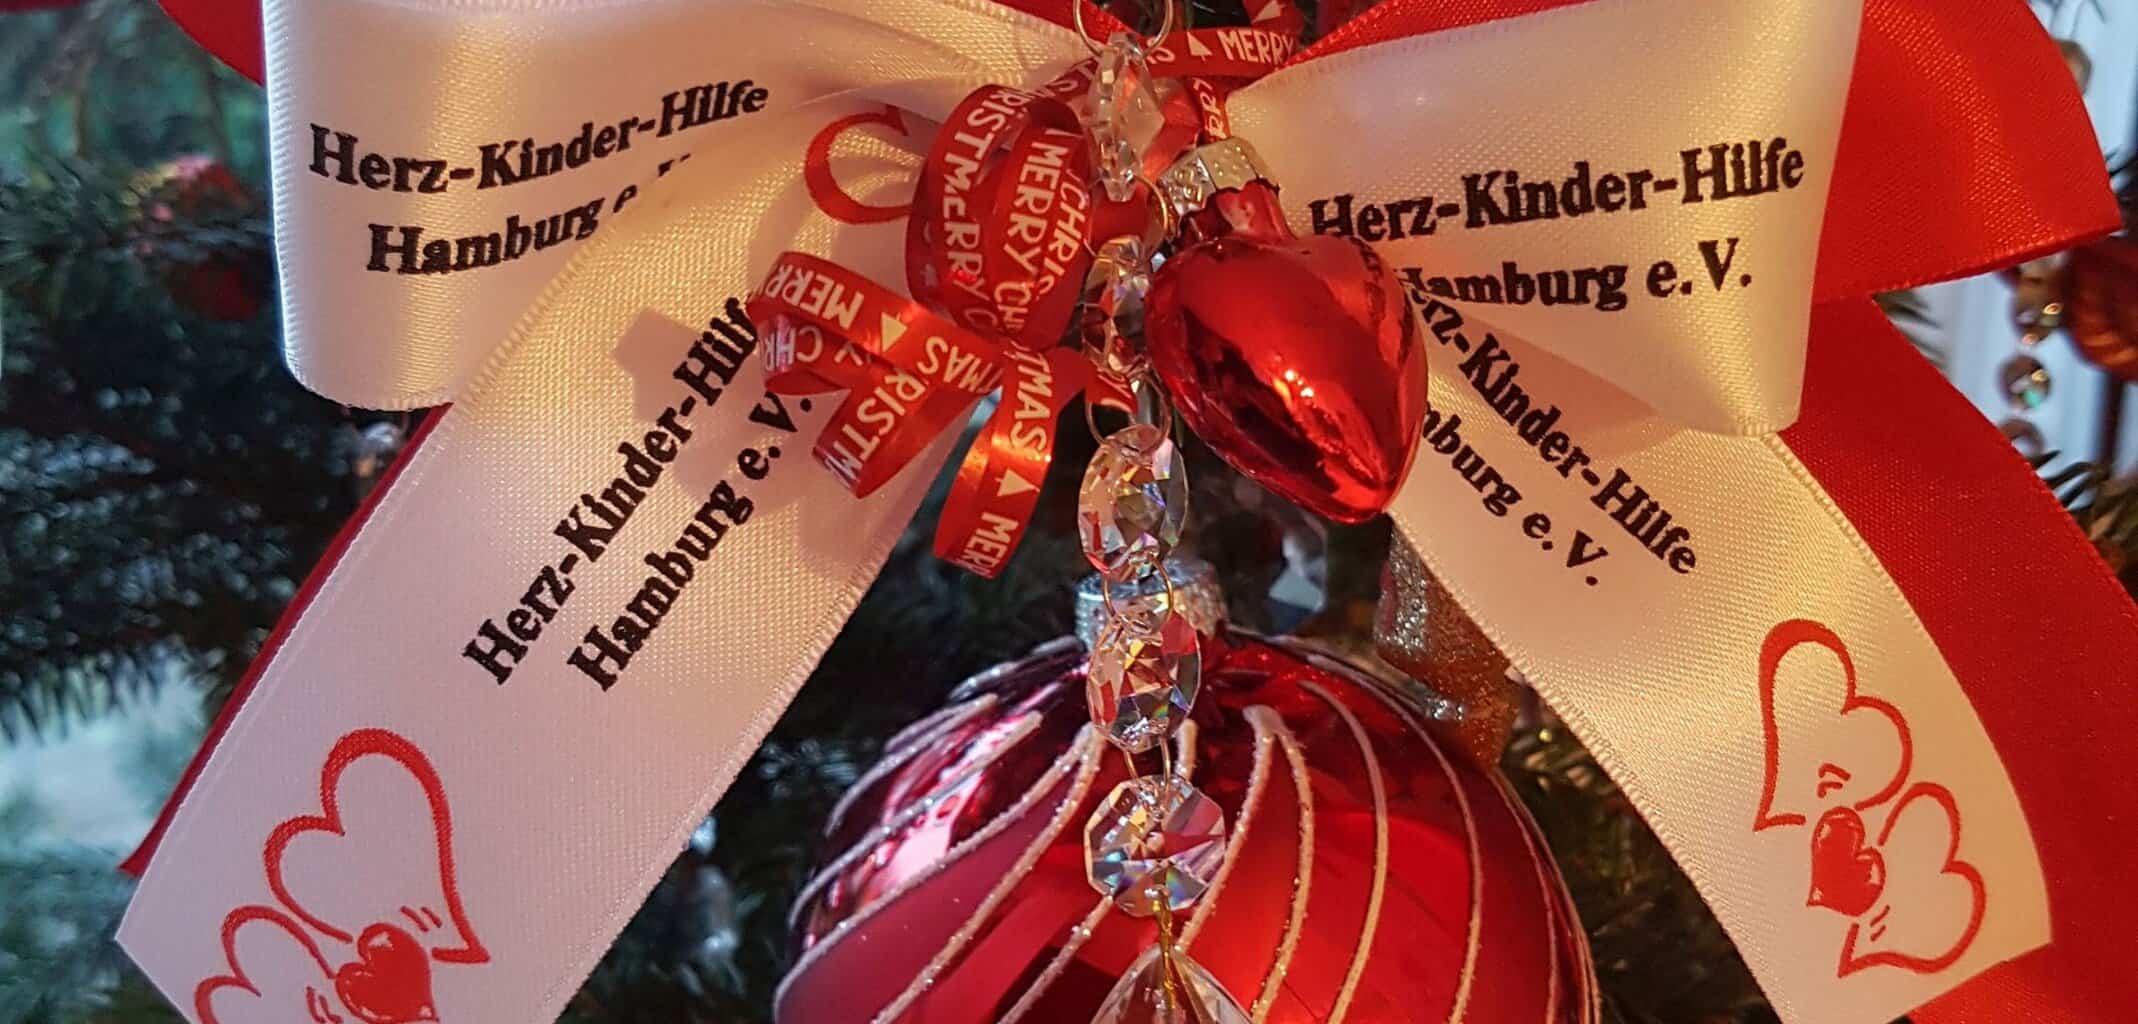 Rote Weihnachtsbaumkugel mit Schleife "Herz-Kinder-Hilfe"